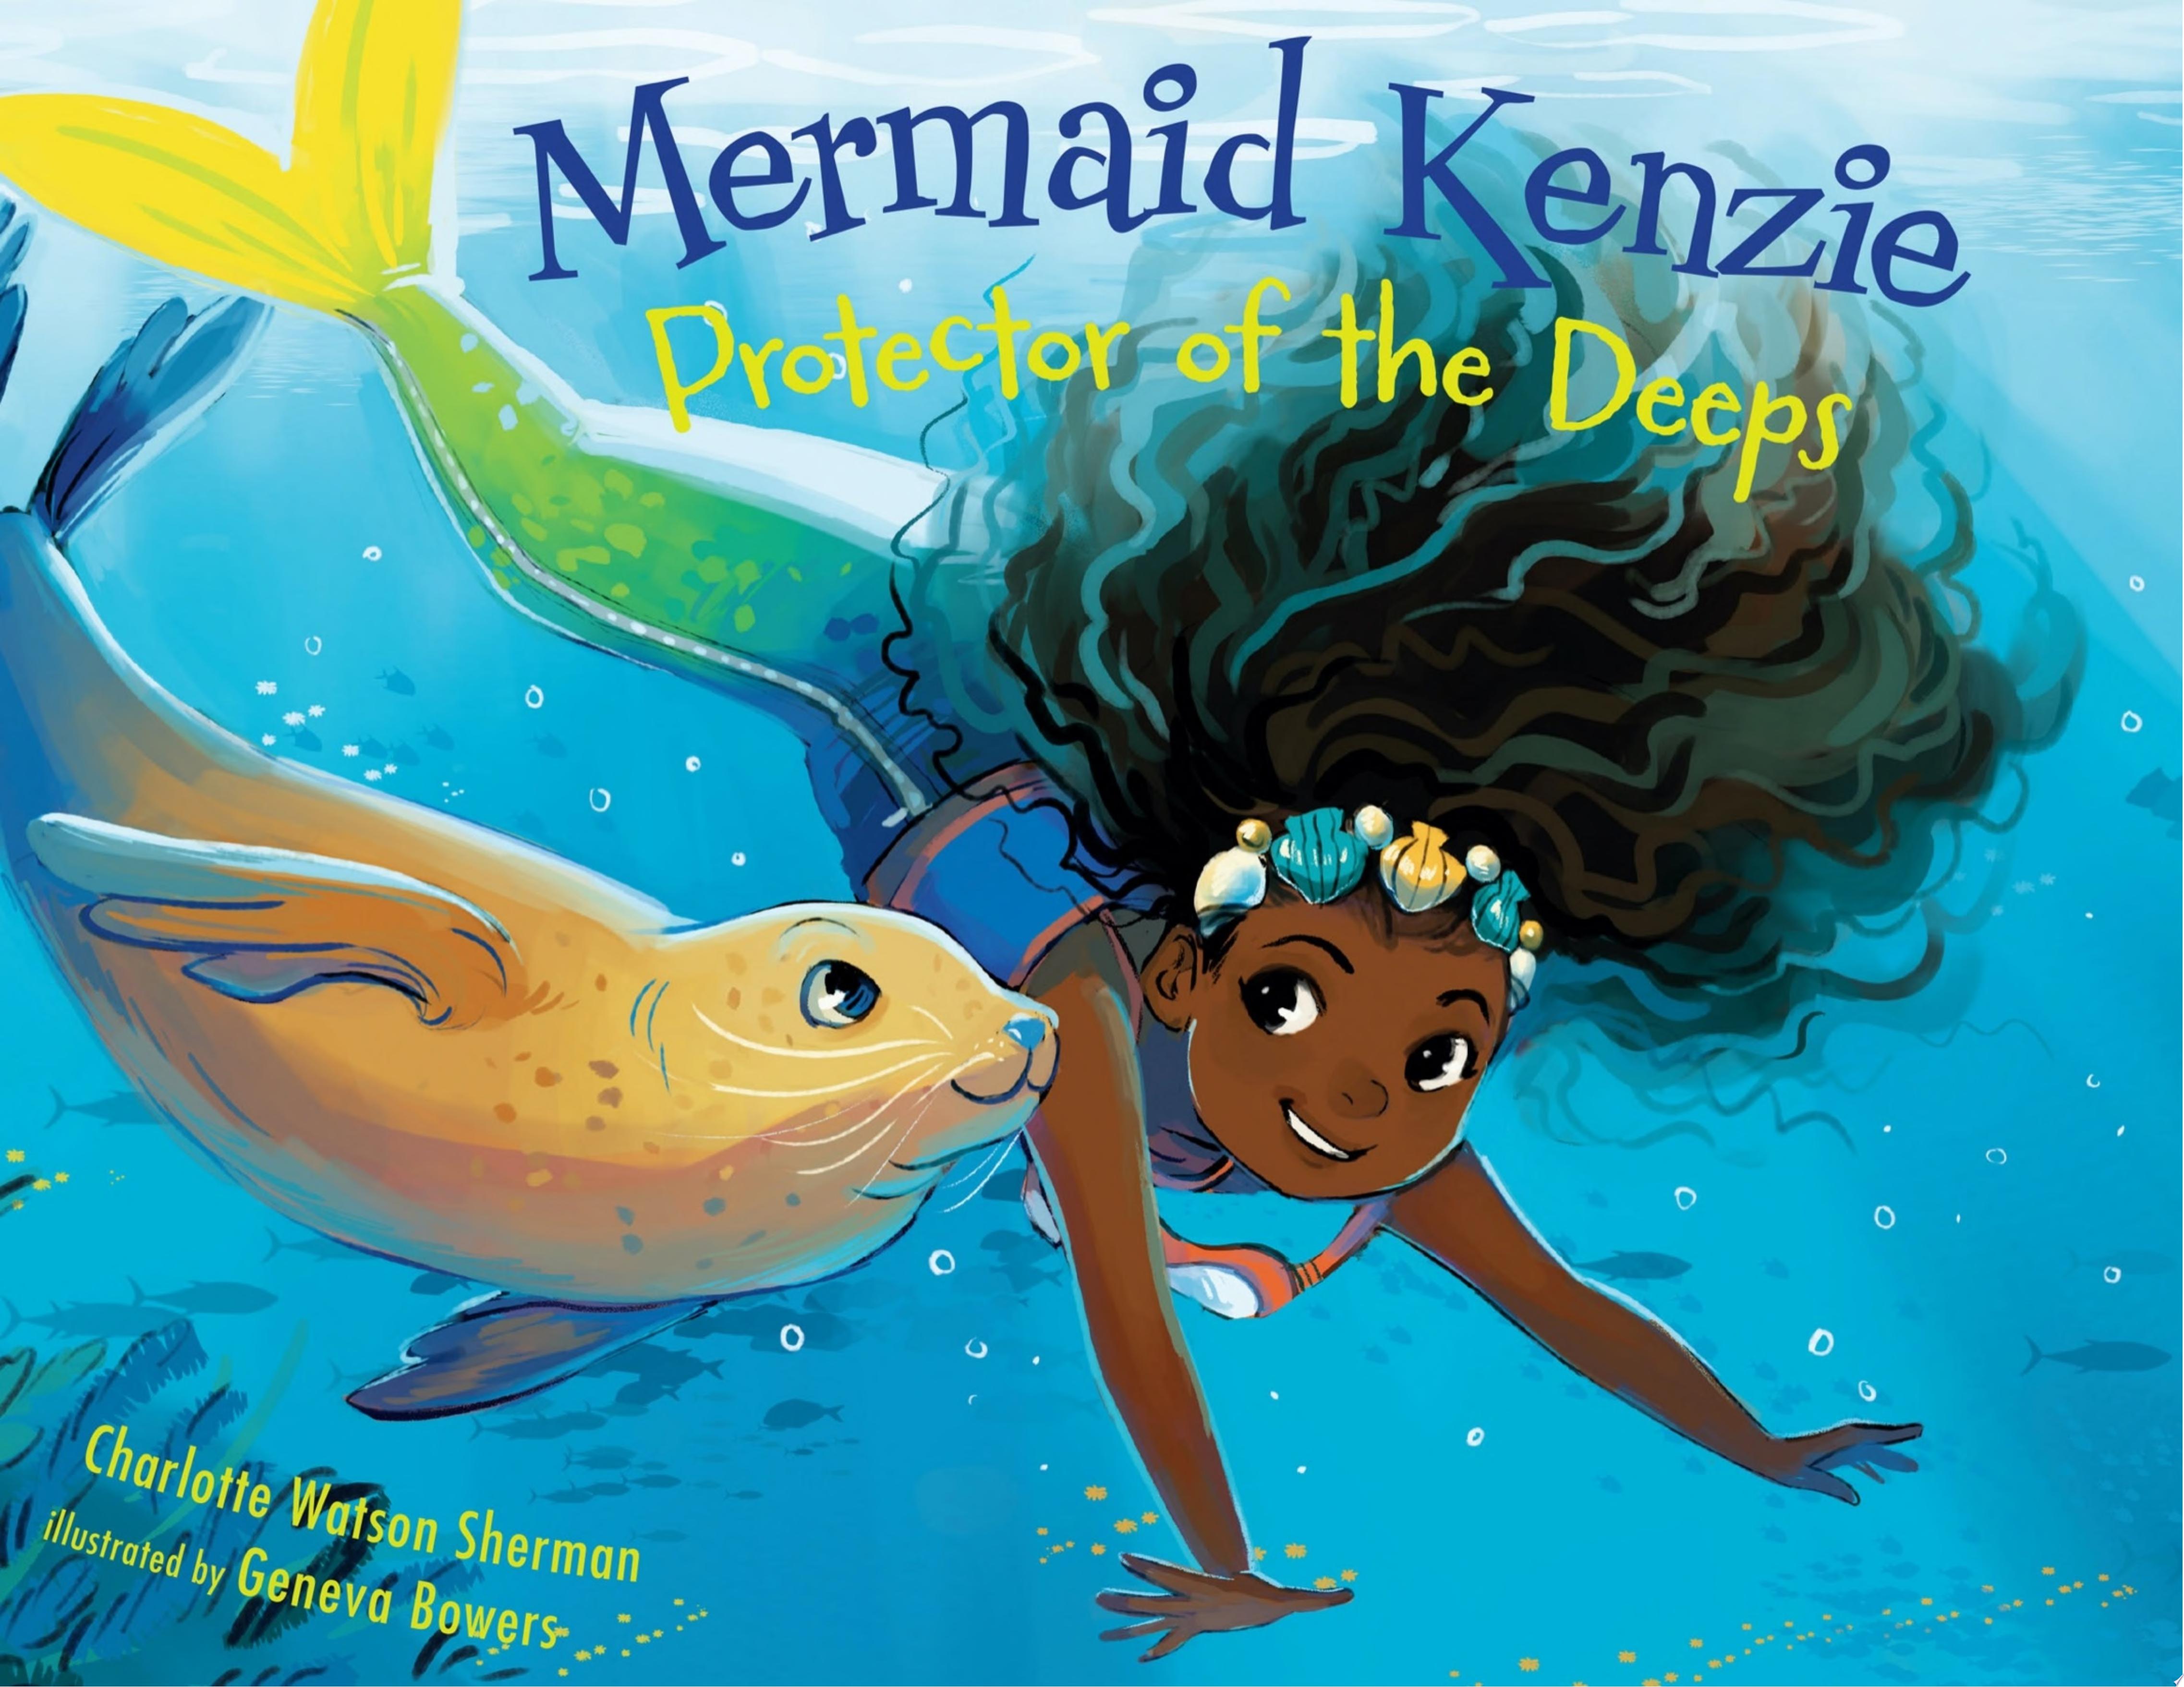 Image for "Mermaid Kenzie"